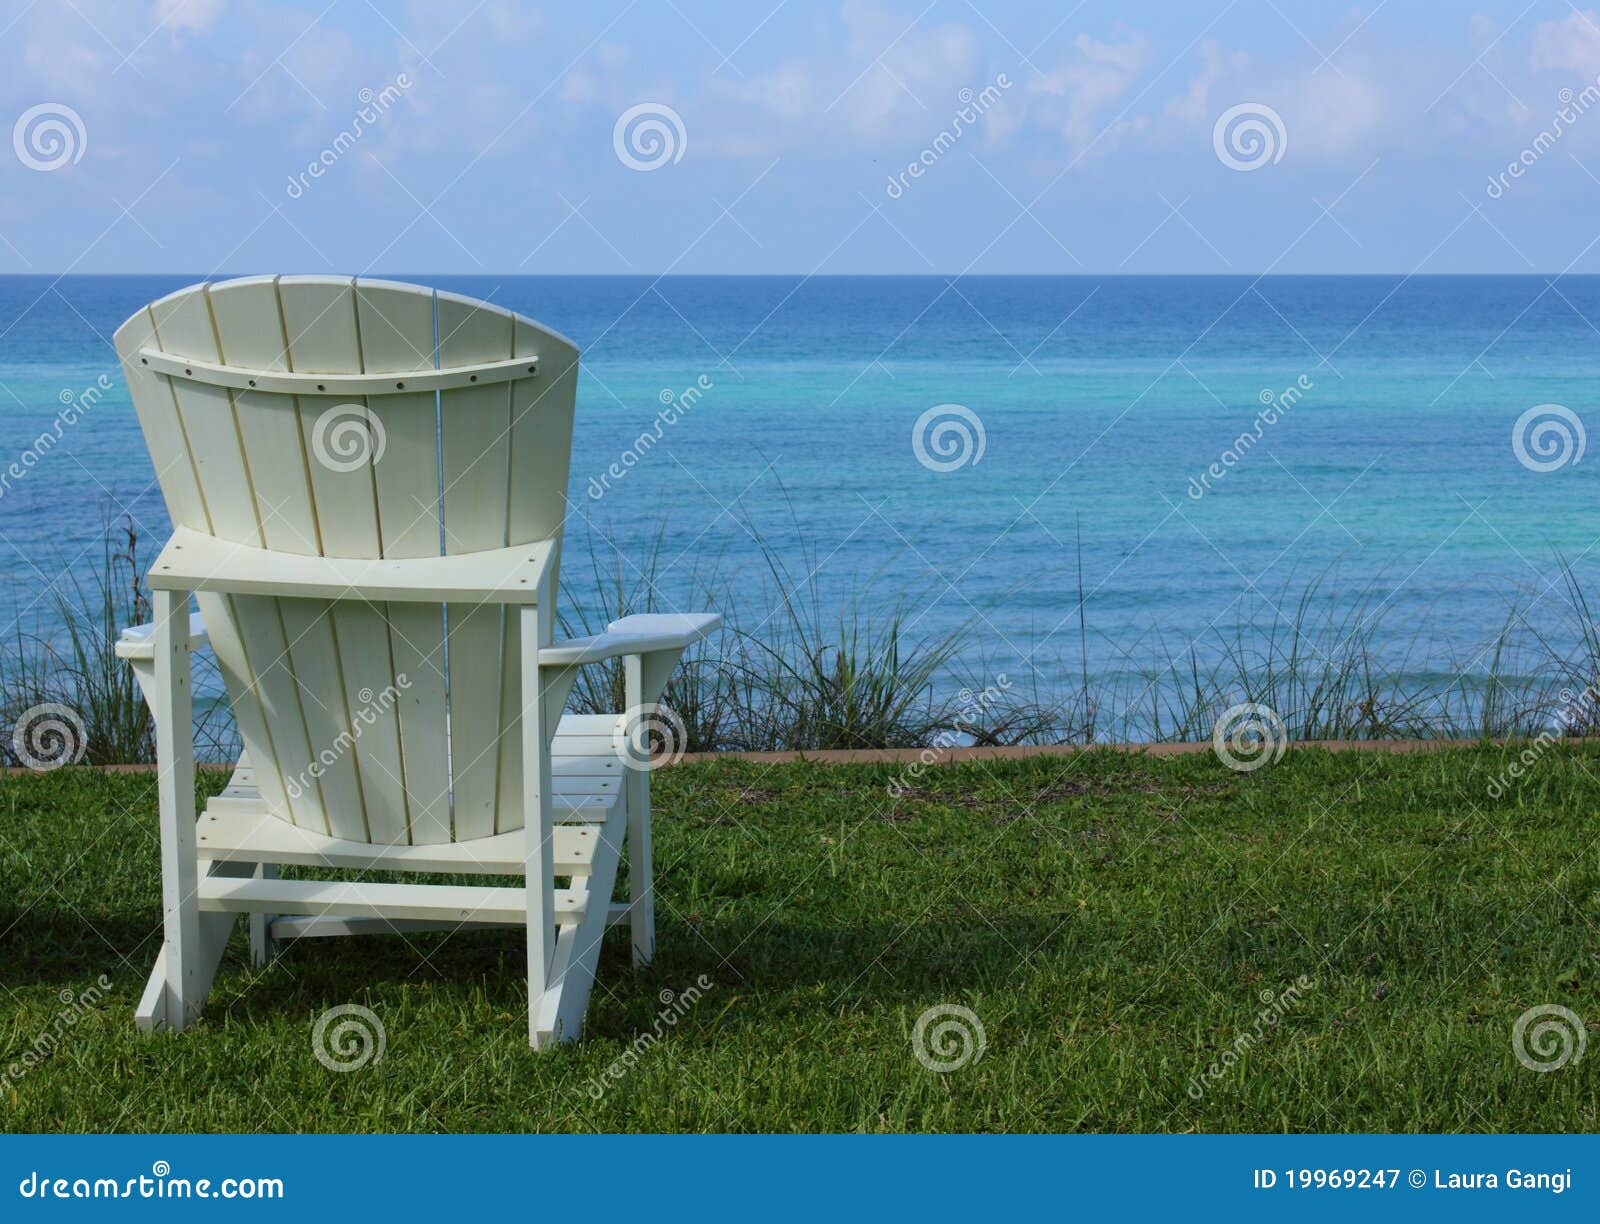 adirondack beach chair with ocean view